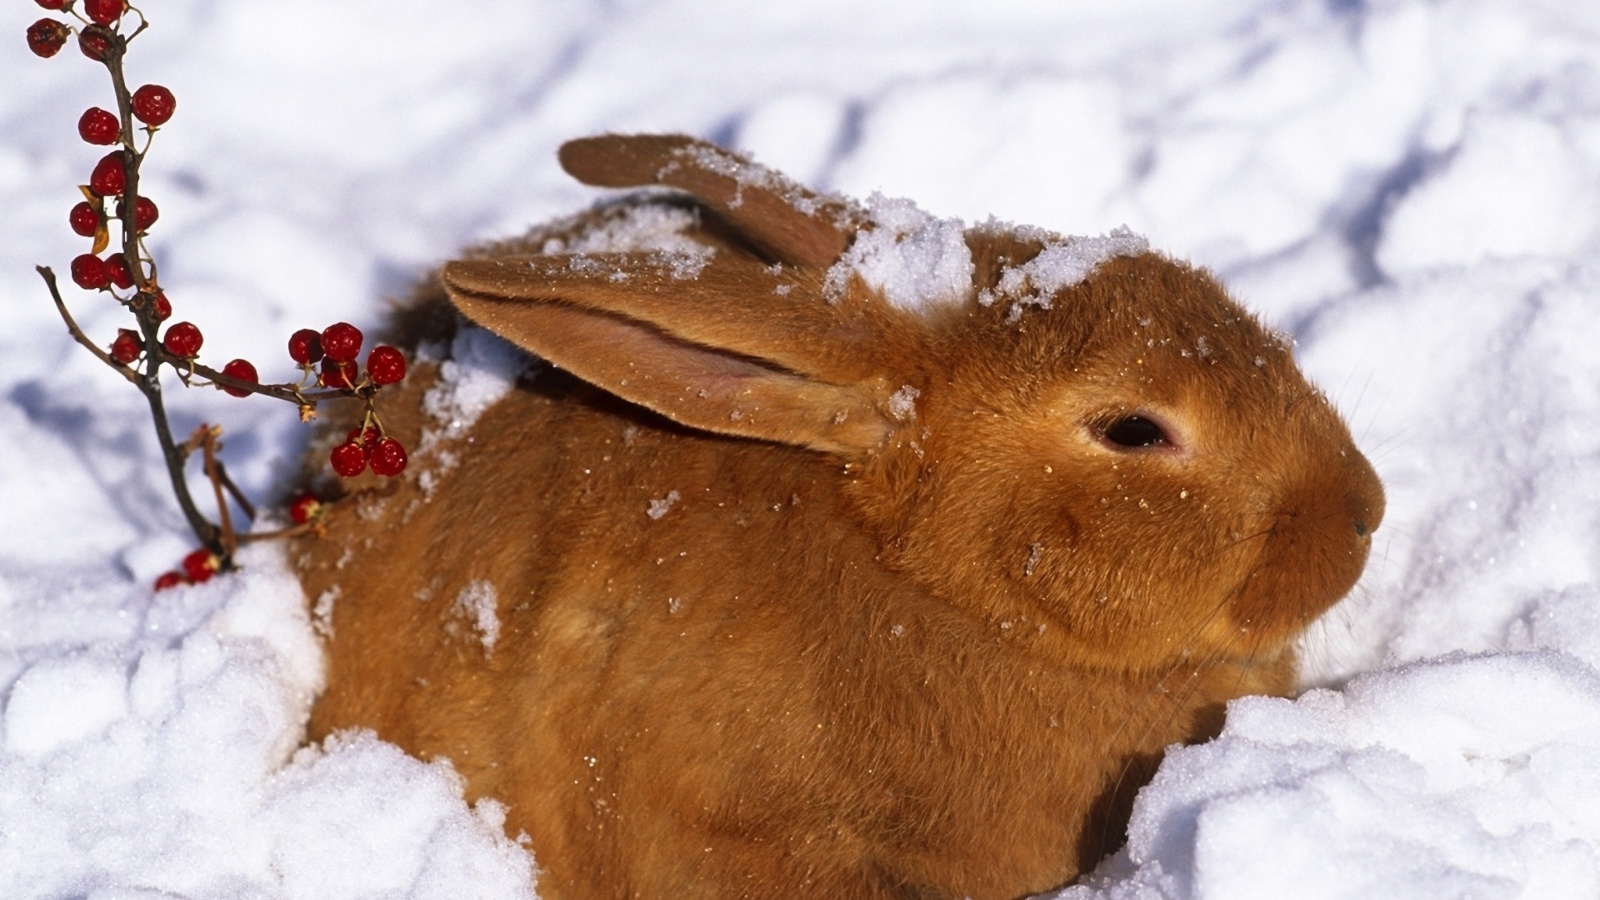 Sfondi Rabbit in Snow 1600x900